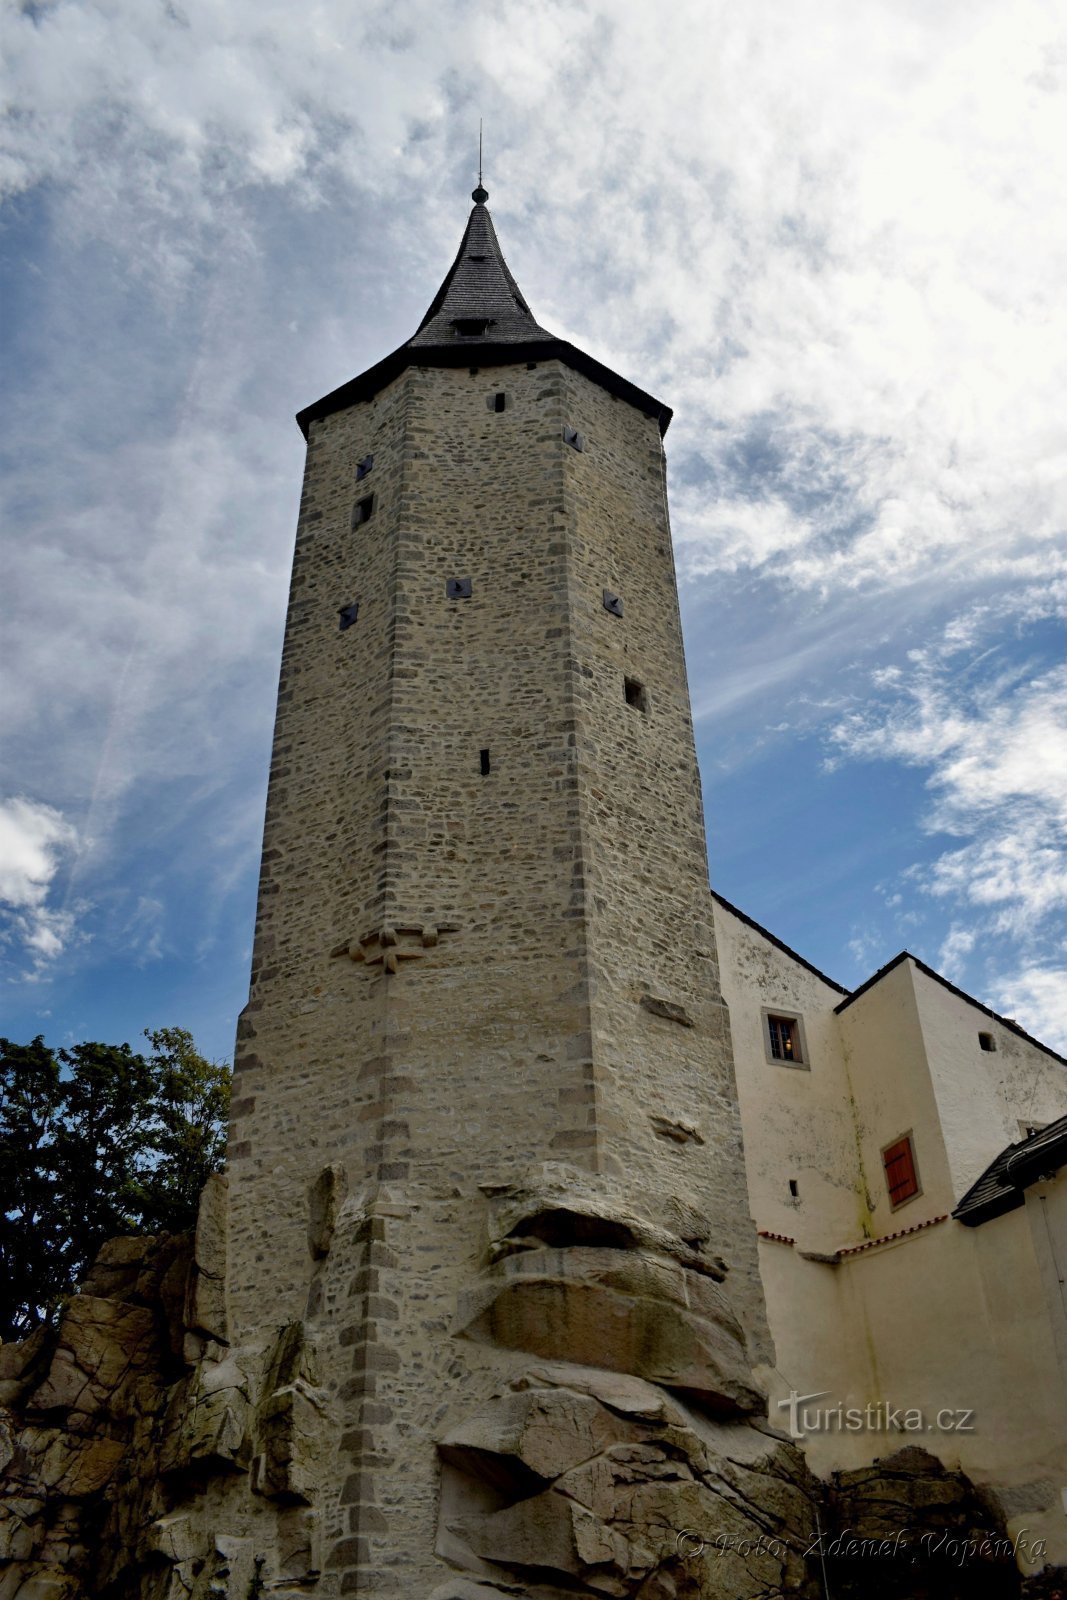 Tháp lâu đài bảy mặt.